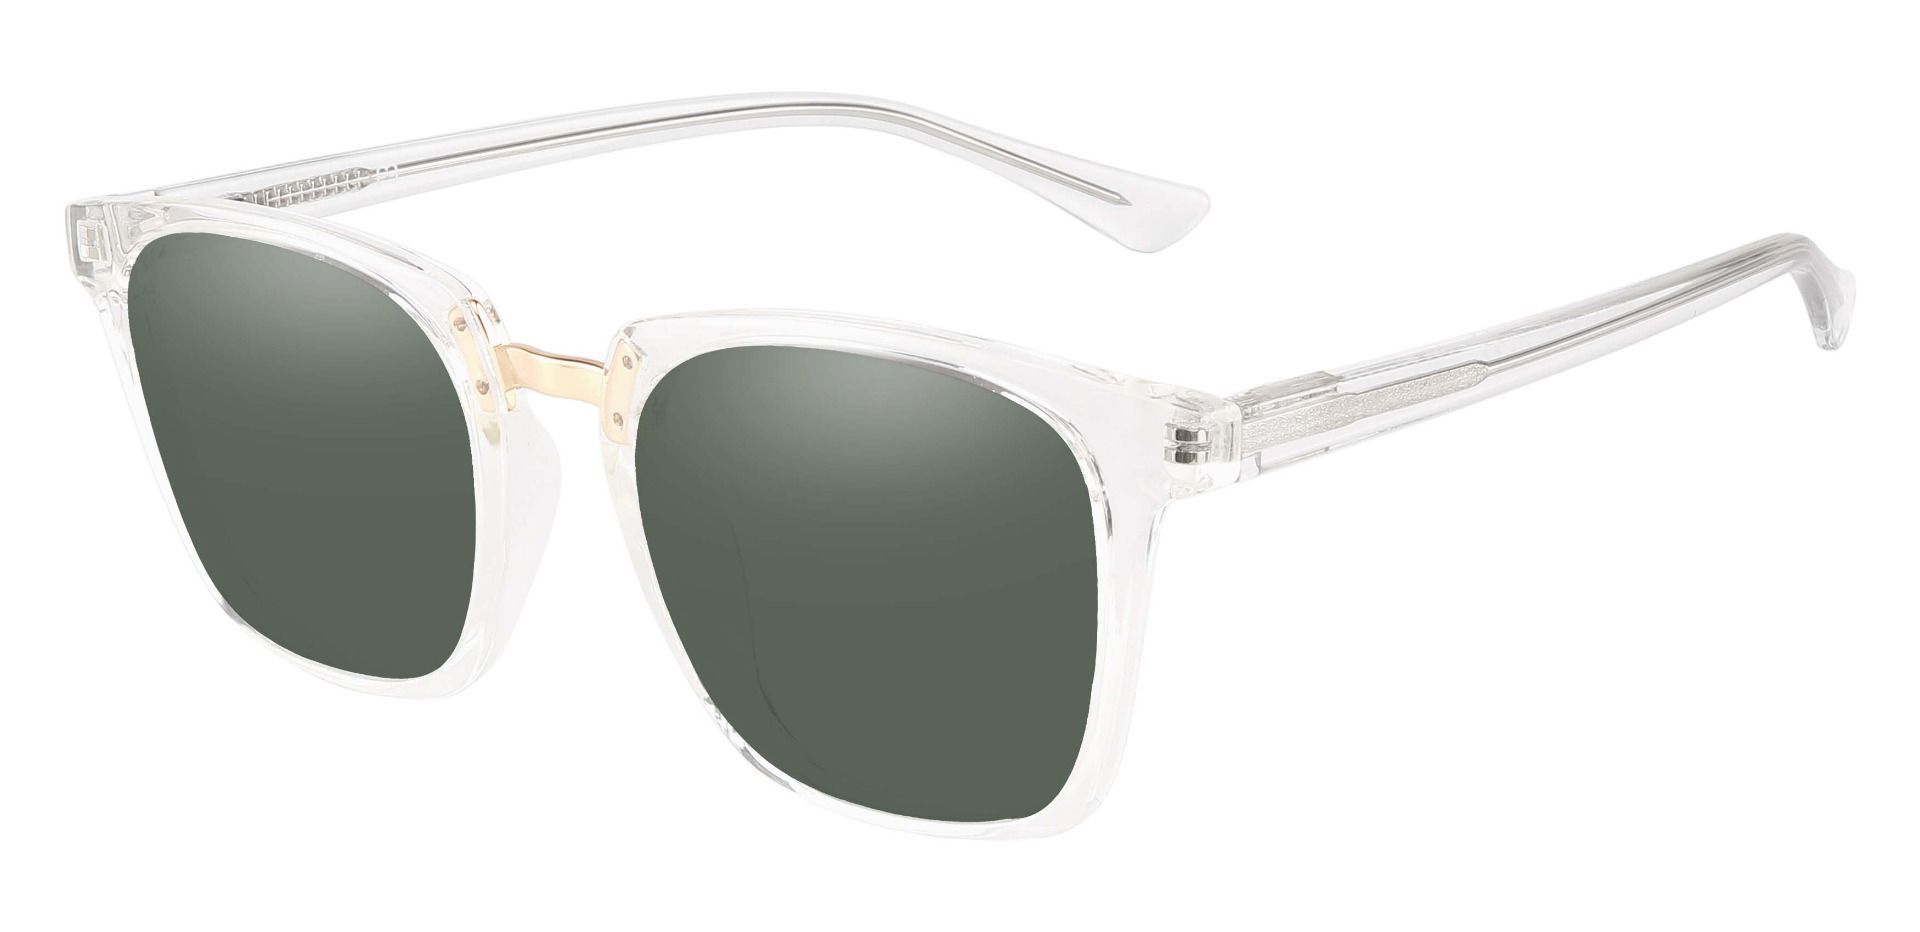 Delta Square Progressive Sunglasses - Clear Frame With Green Lenses